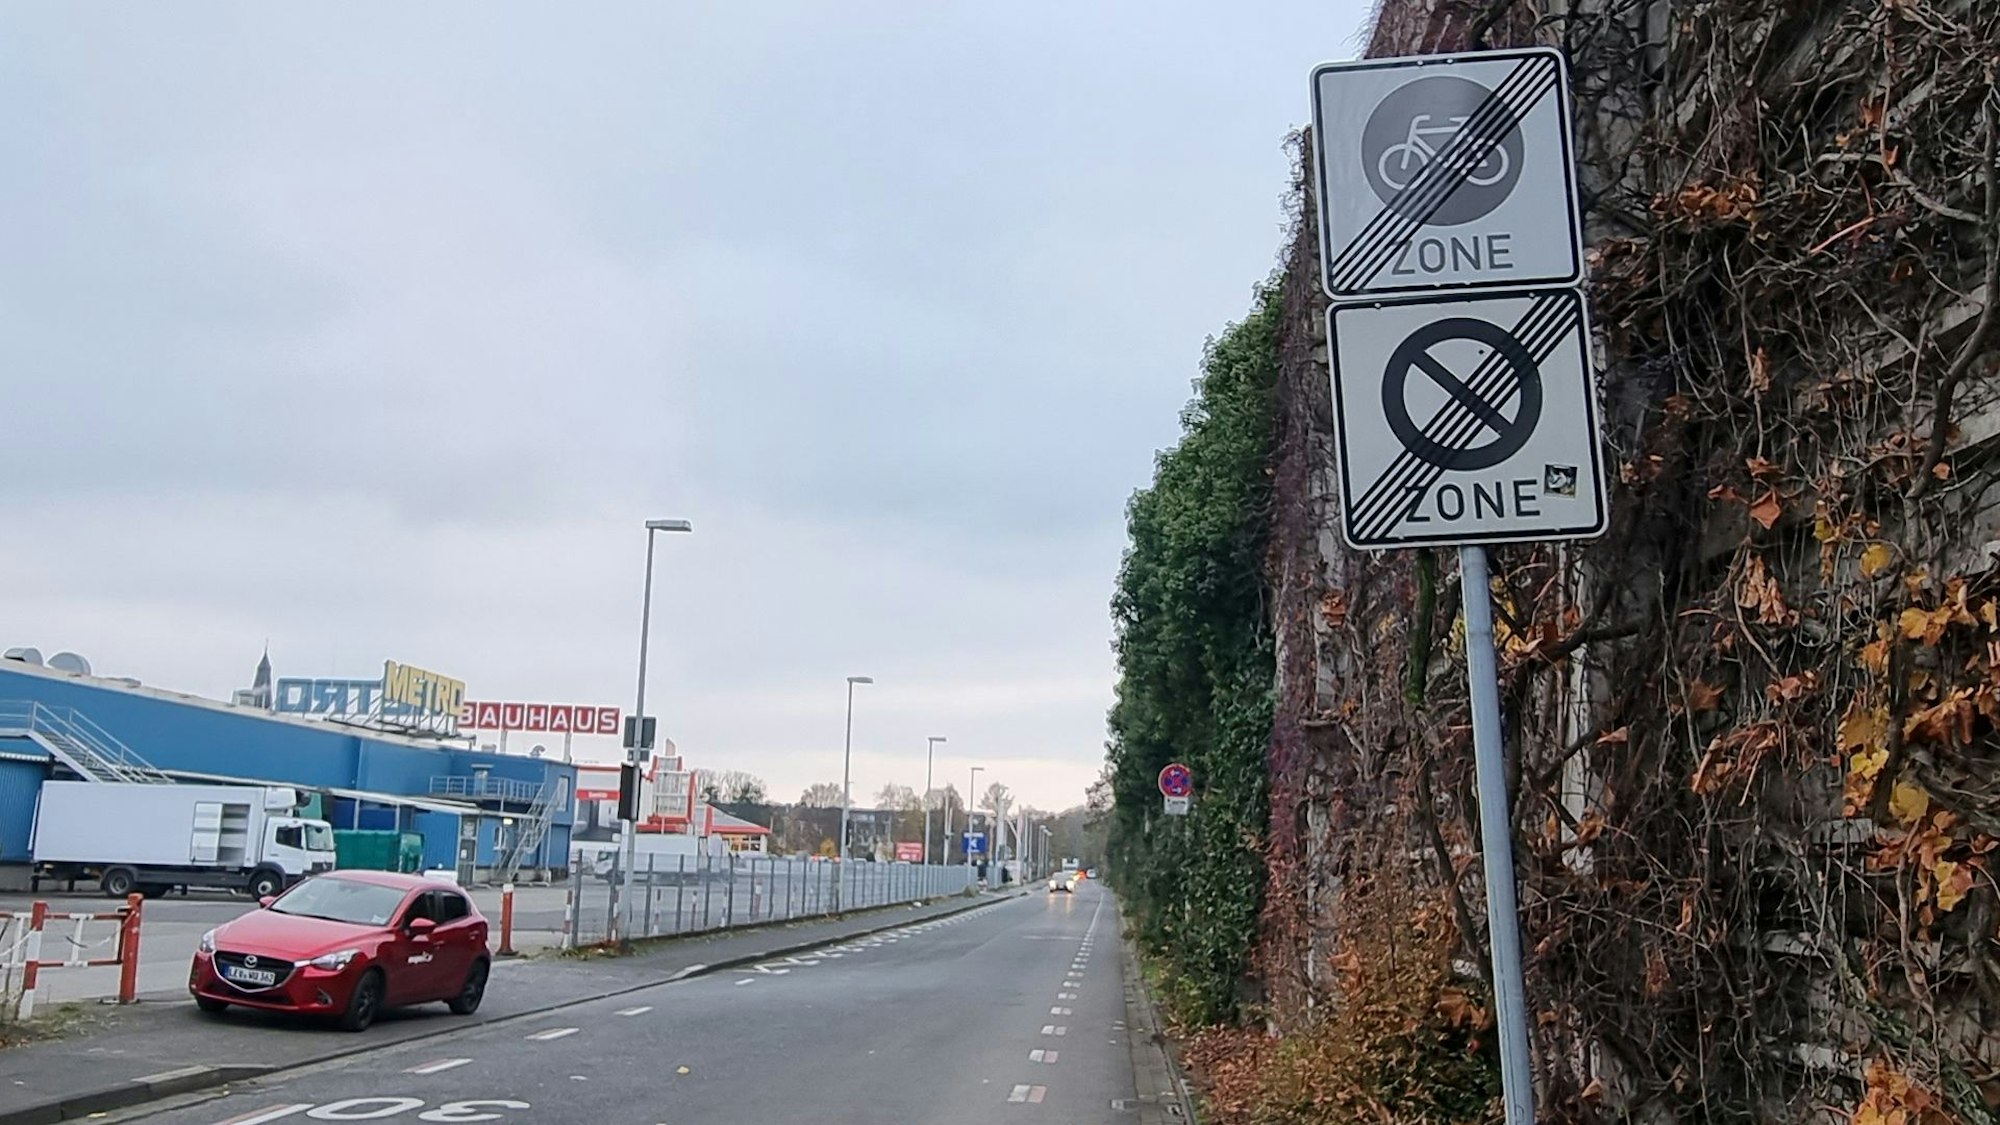 Schild, das das Ende der Fahrradzone anzeigt.